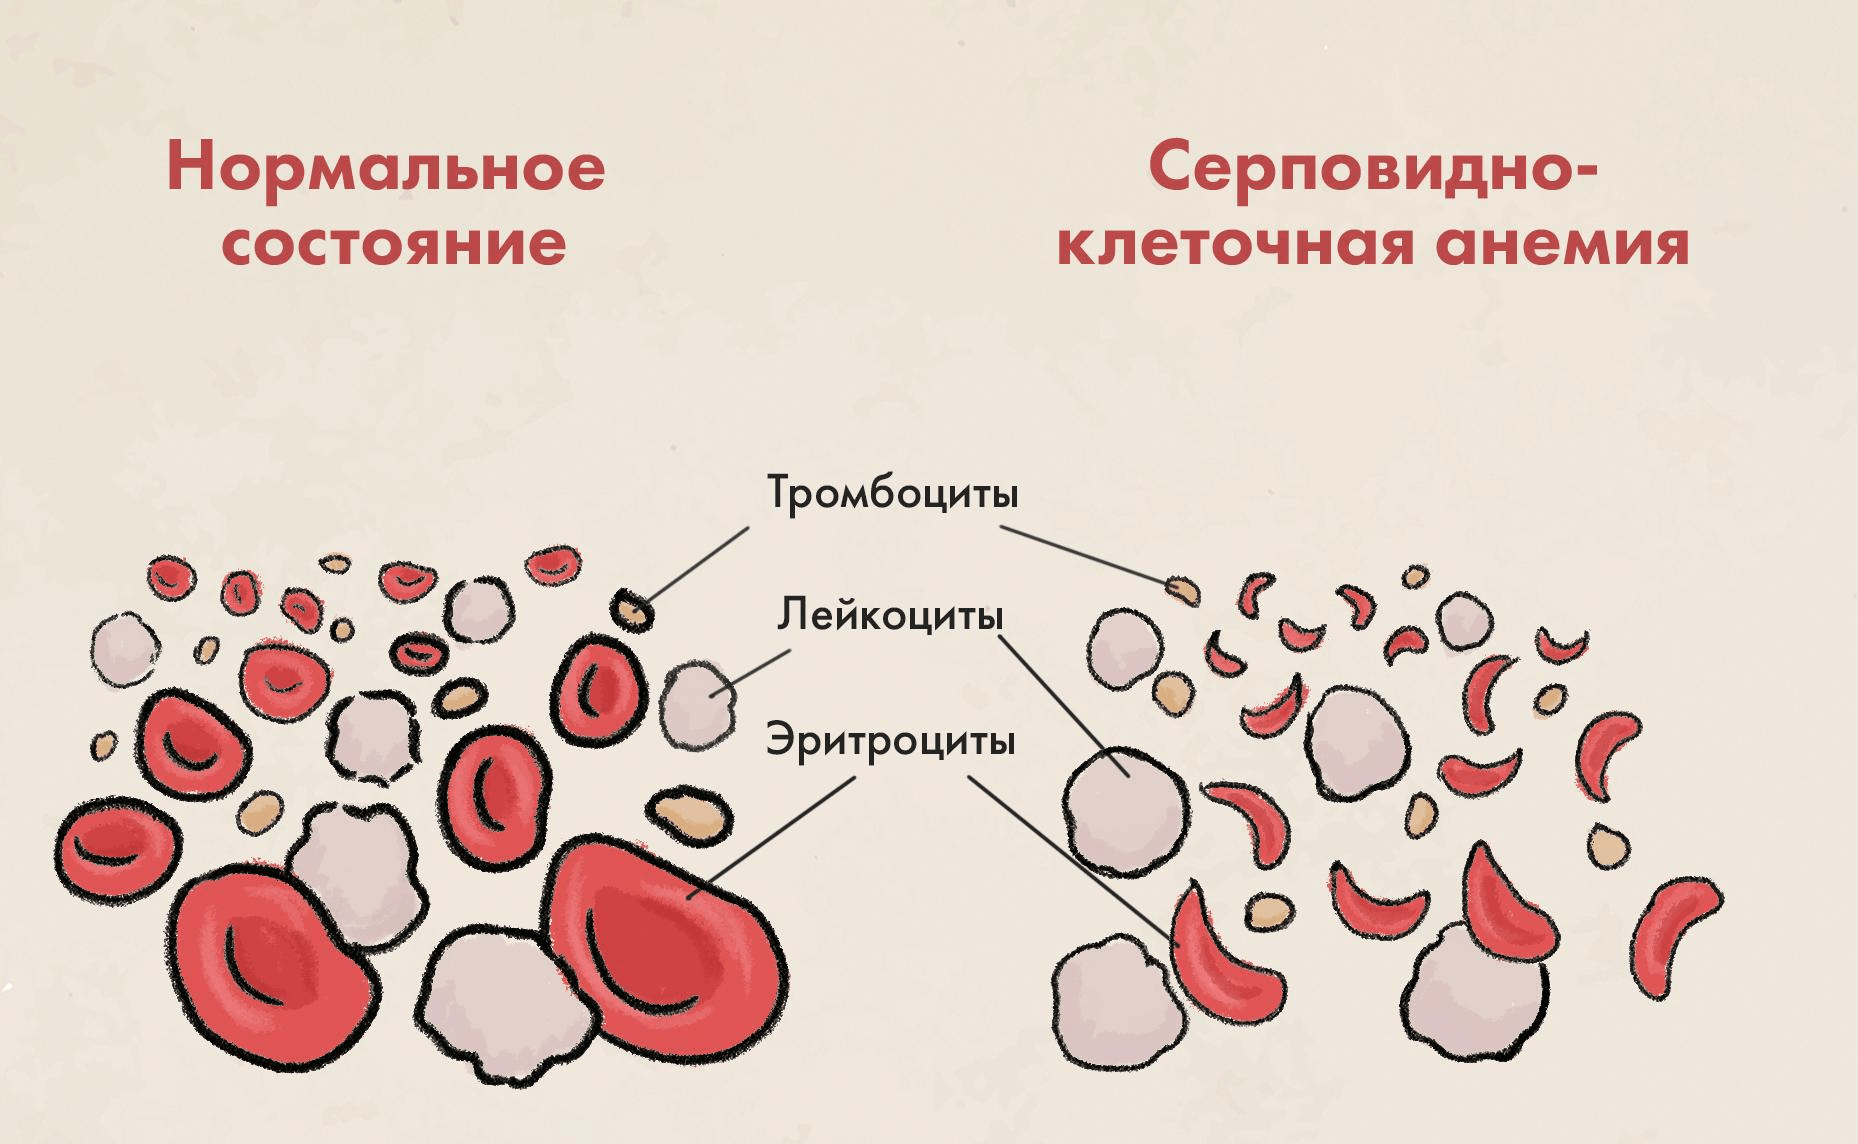 При серповидно-клеточной анемии эритроциты деформируются